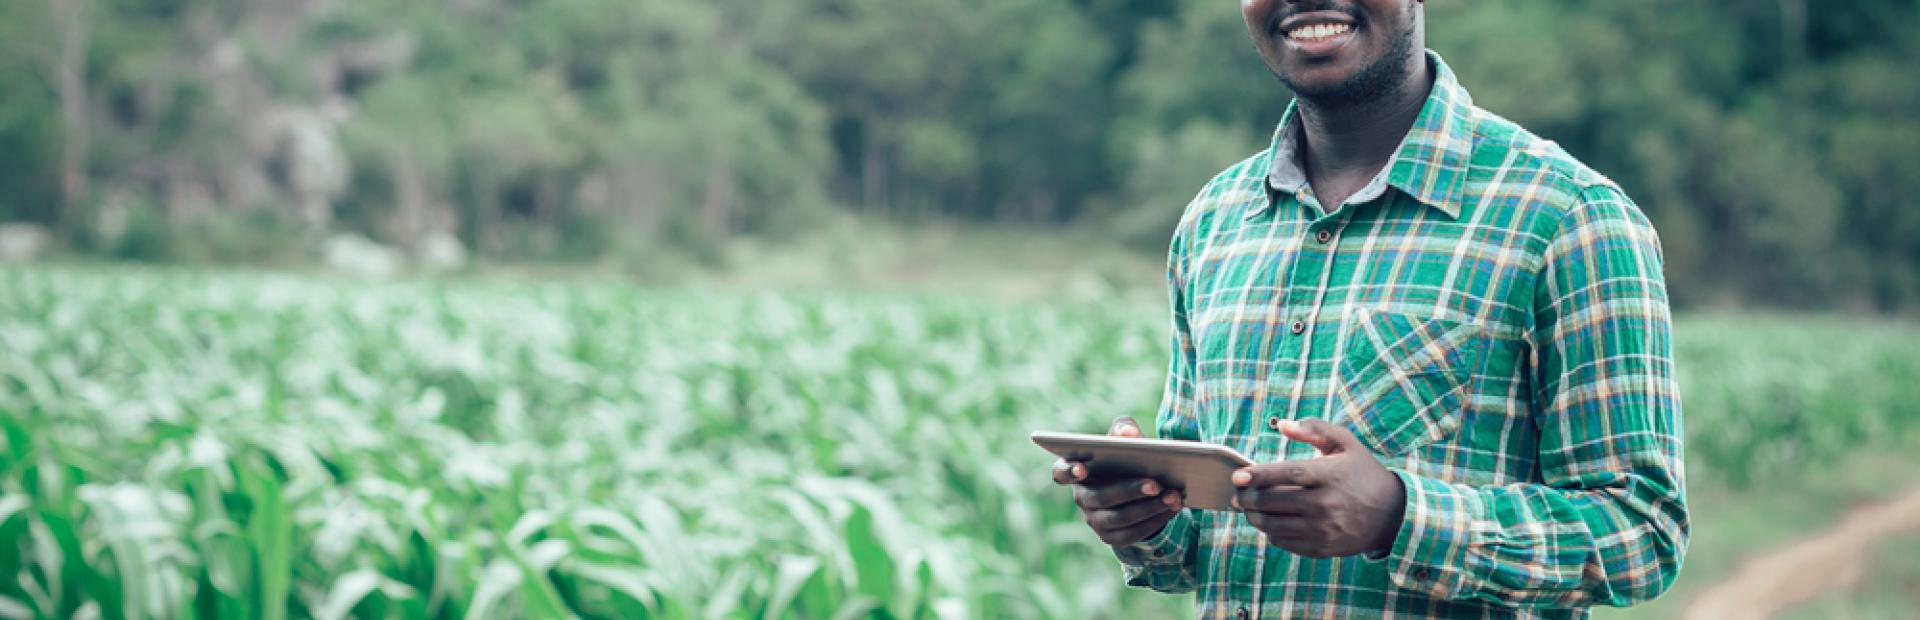 Com o programa Ater Digital, governo brasileiro quer alcançar 50% dos agricultores até 2030. MAPA tem parceria com o IICA para começar extensão rural digital no Nordeste  